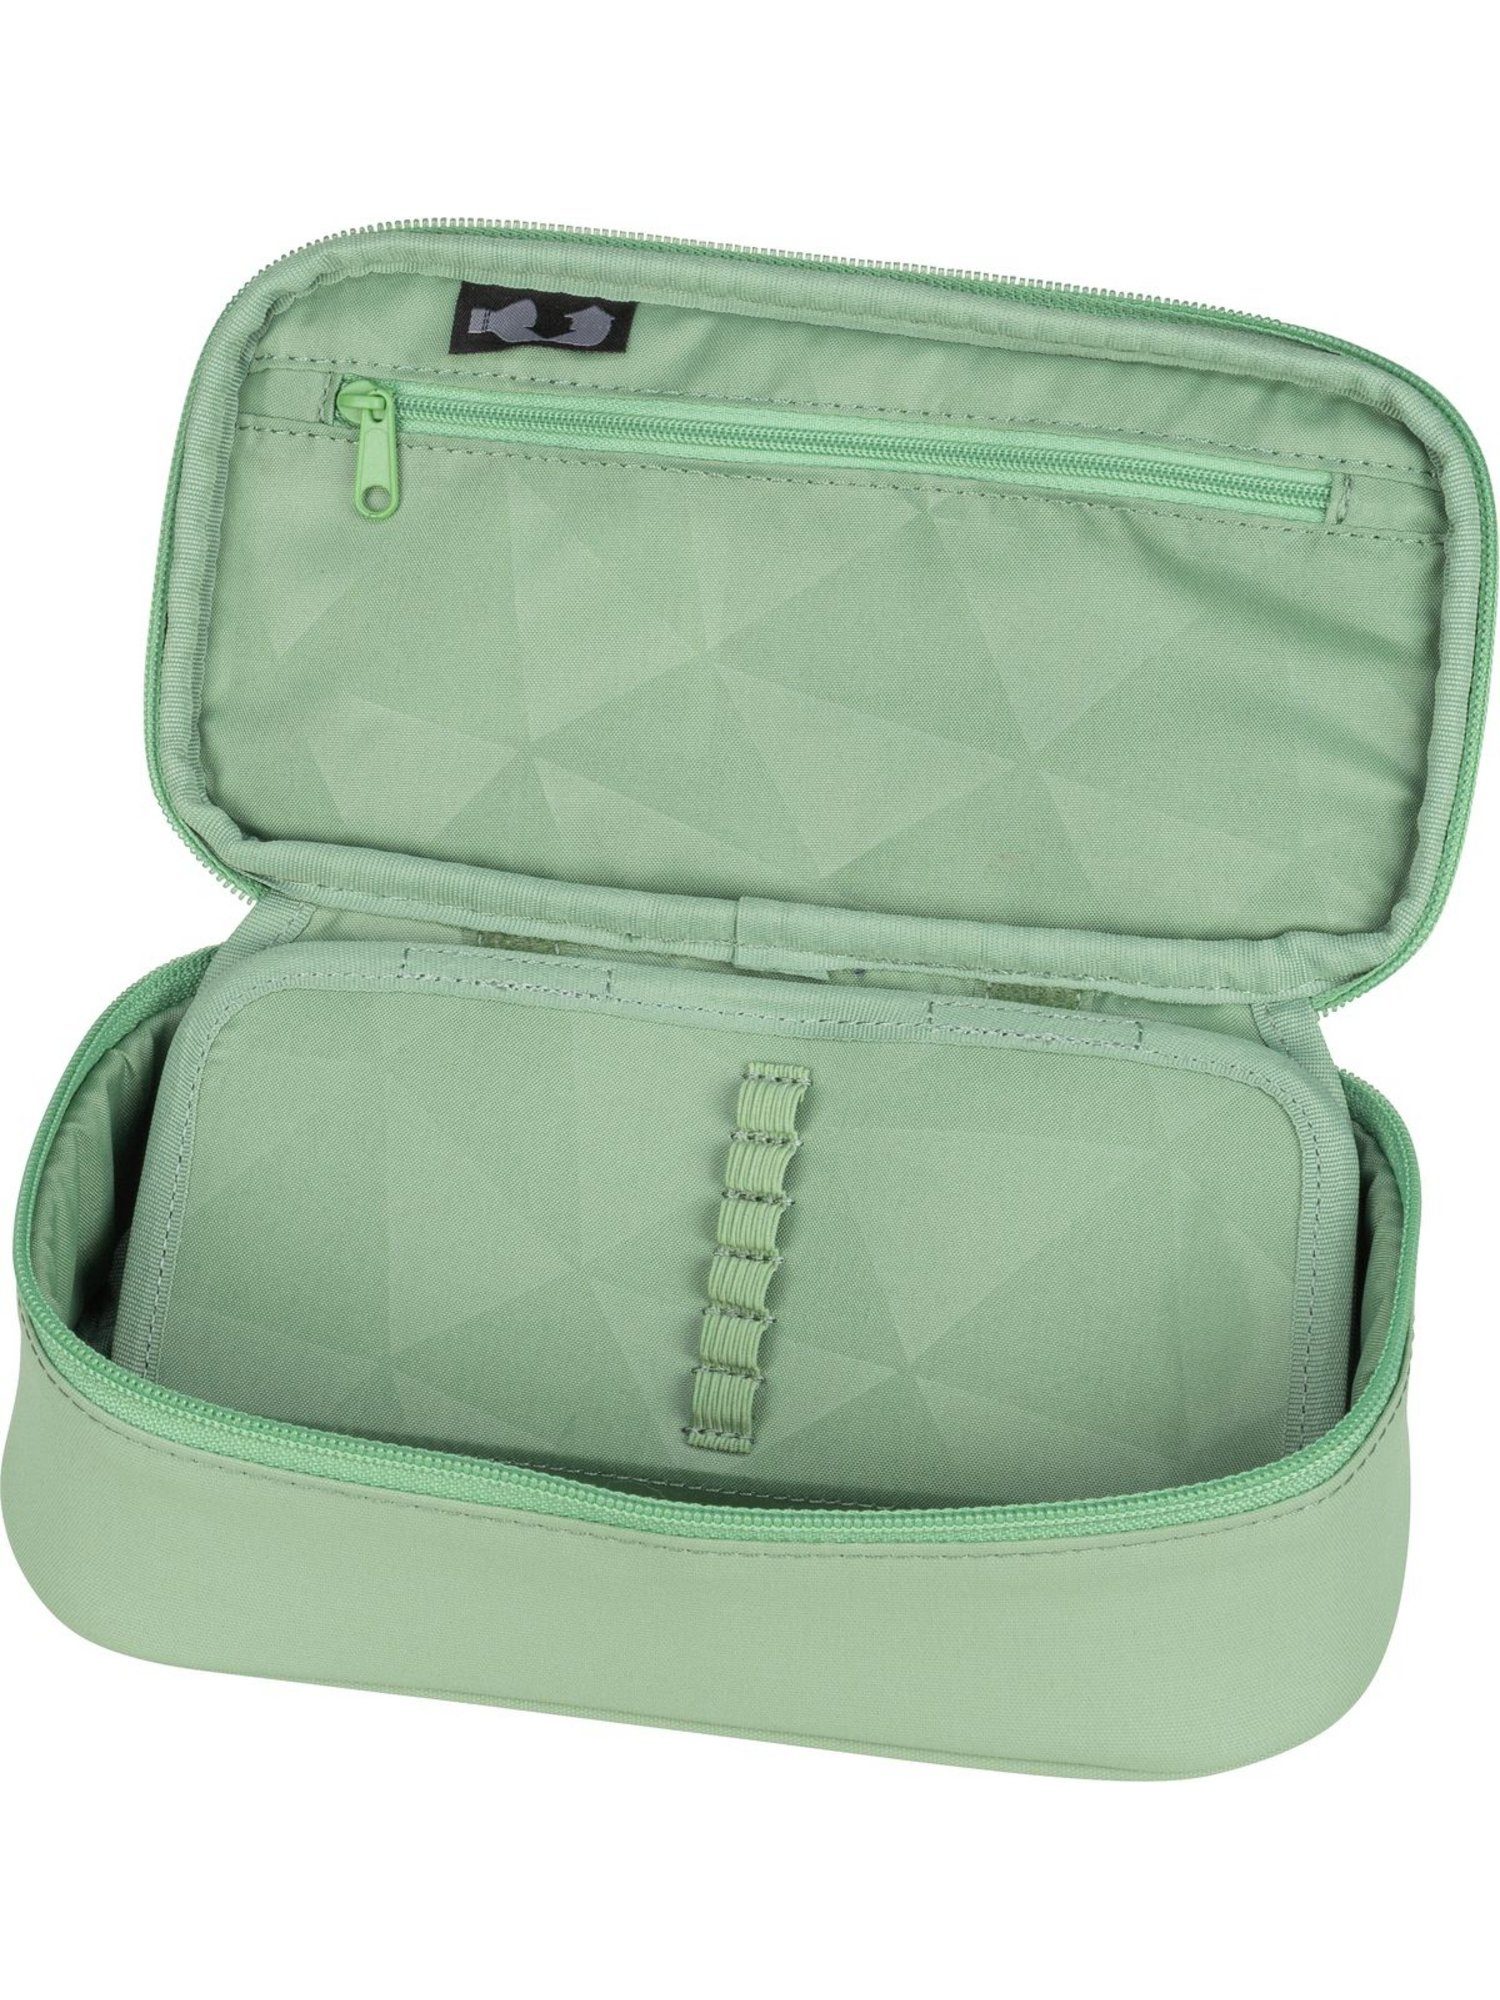 Jade Schlamperbox Edition Federmäppchen Nordic Green satch Satch